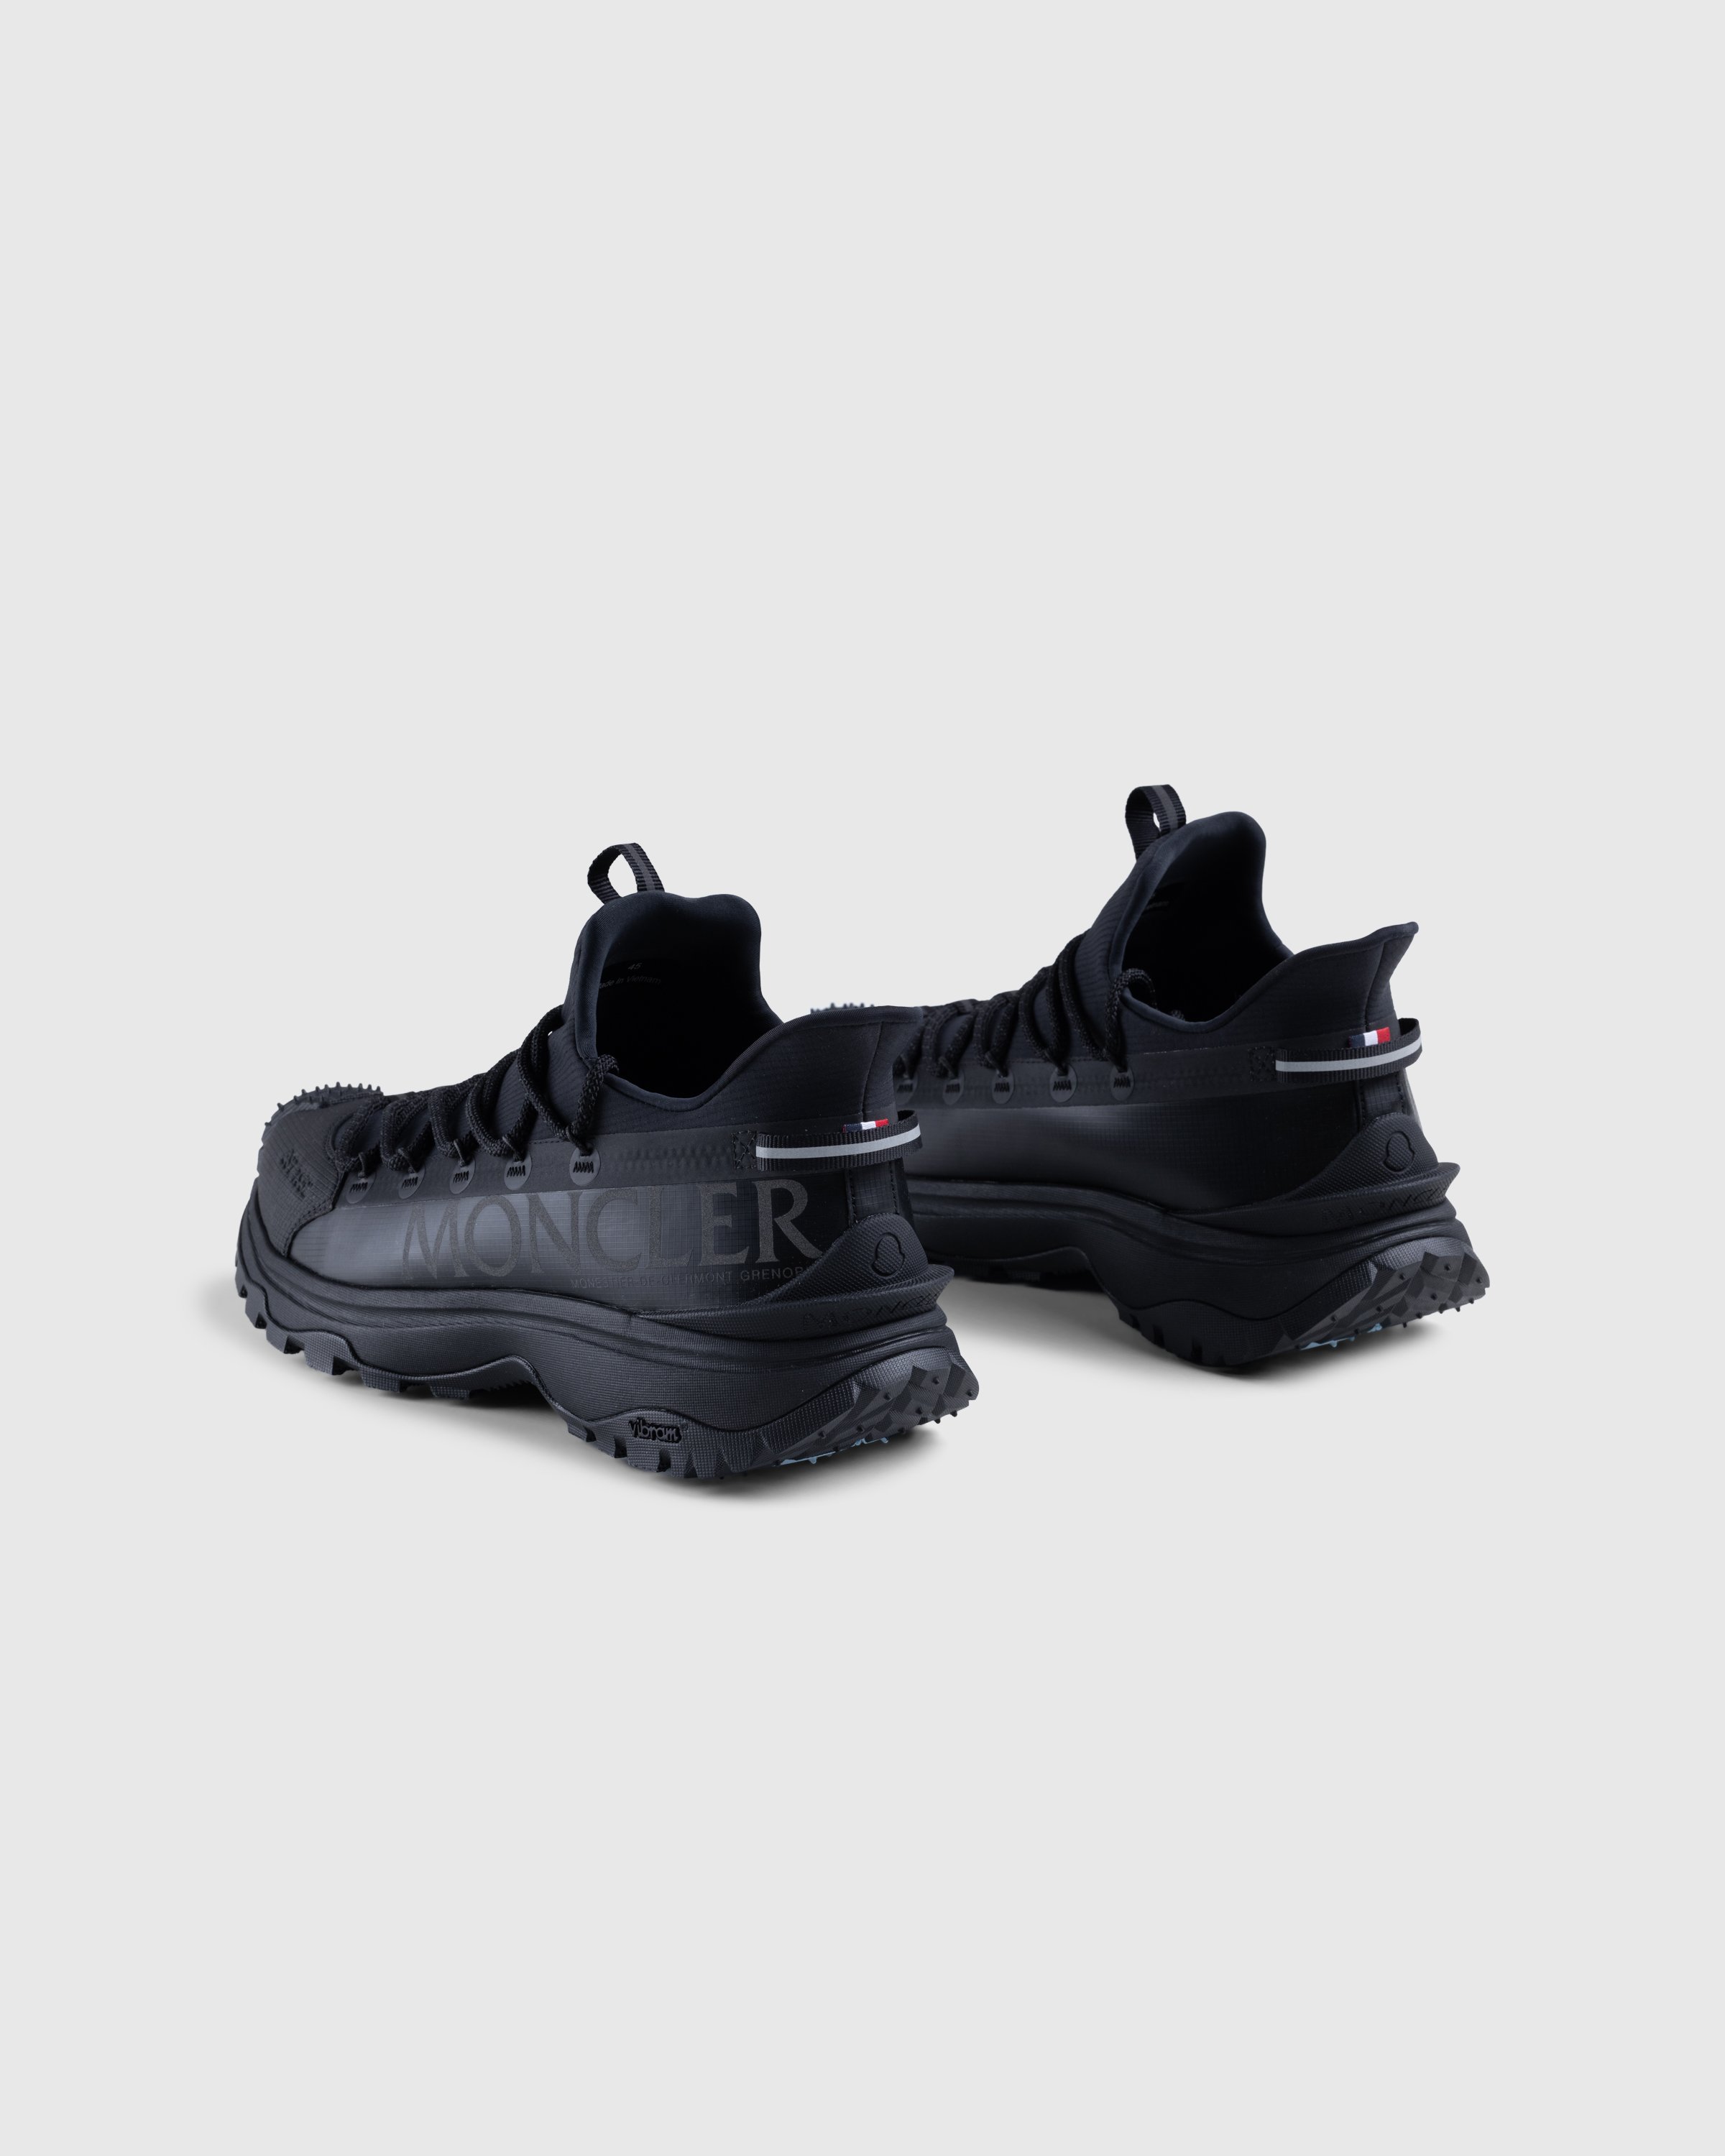 Moncler - Trailgrip Lite 2 Sneakers Black - Footwear - Black - Image 4